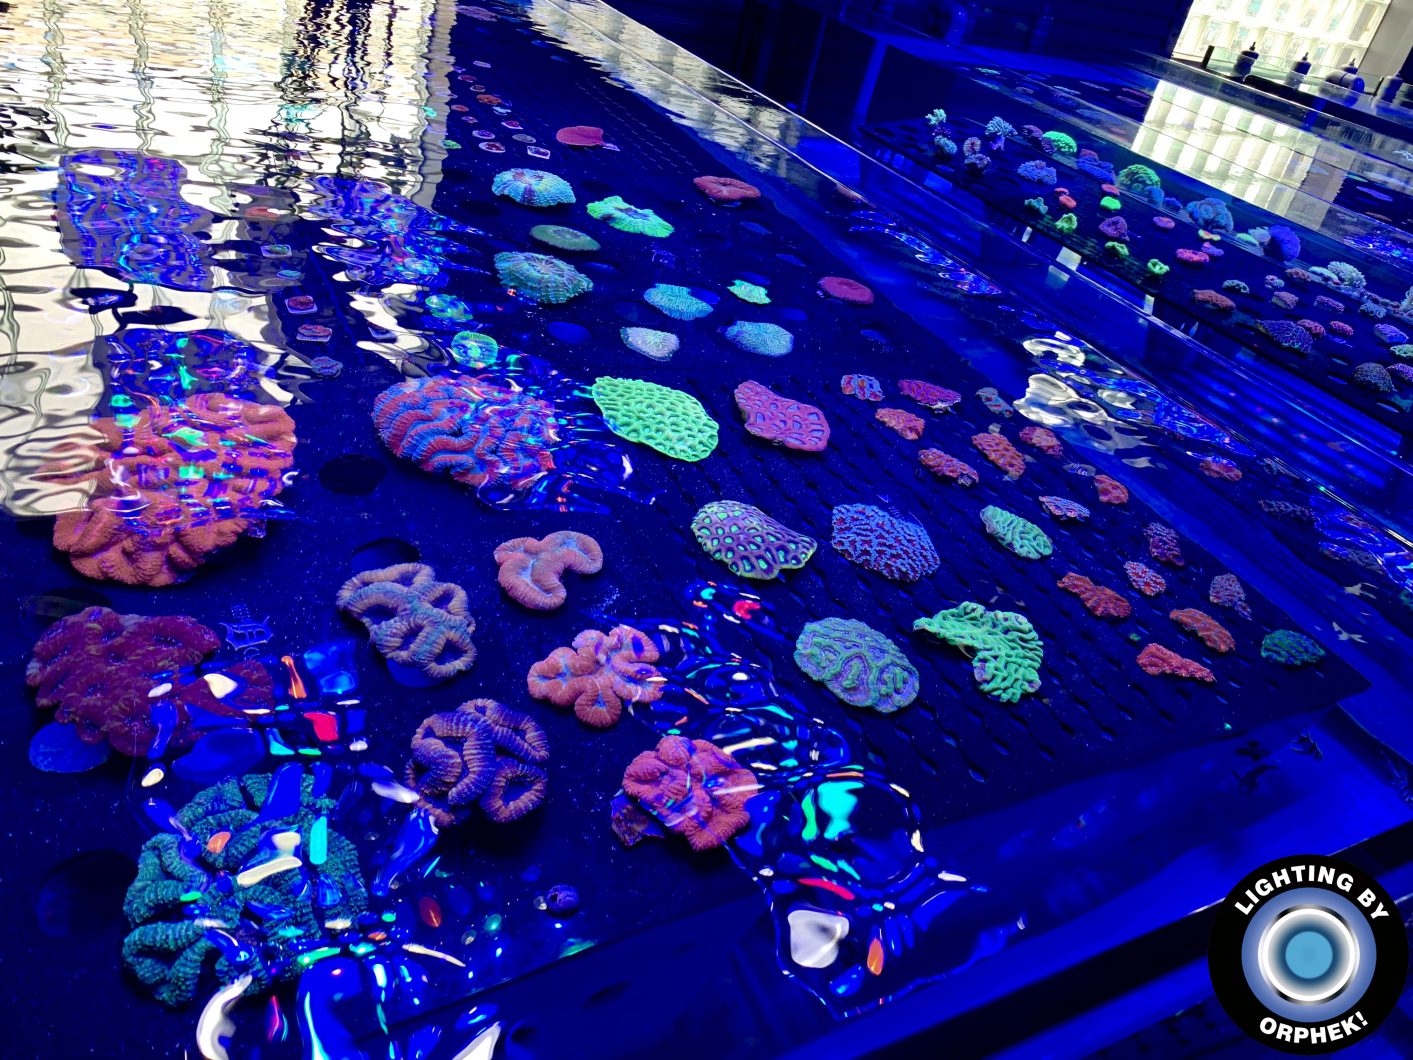 ไฟ LED ถังปะการังที่ดีที่สุด